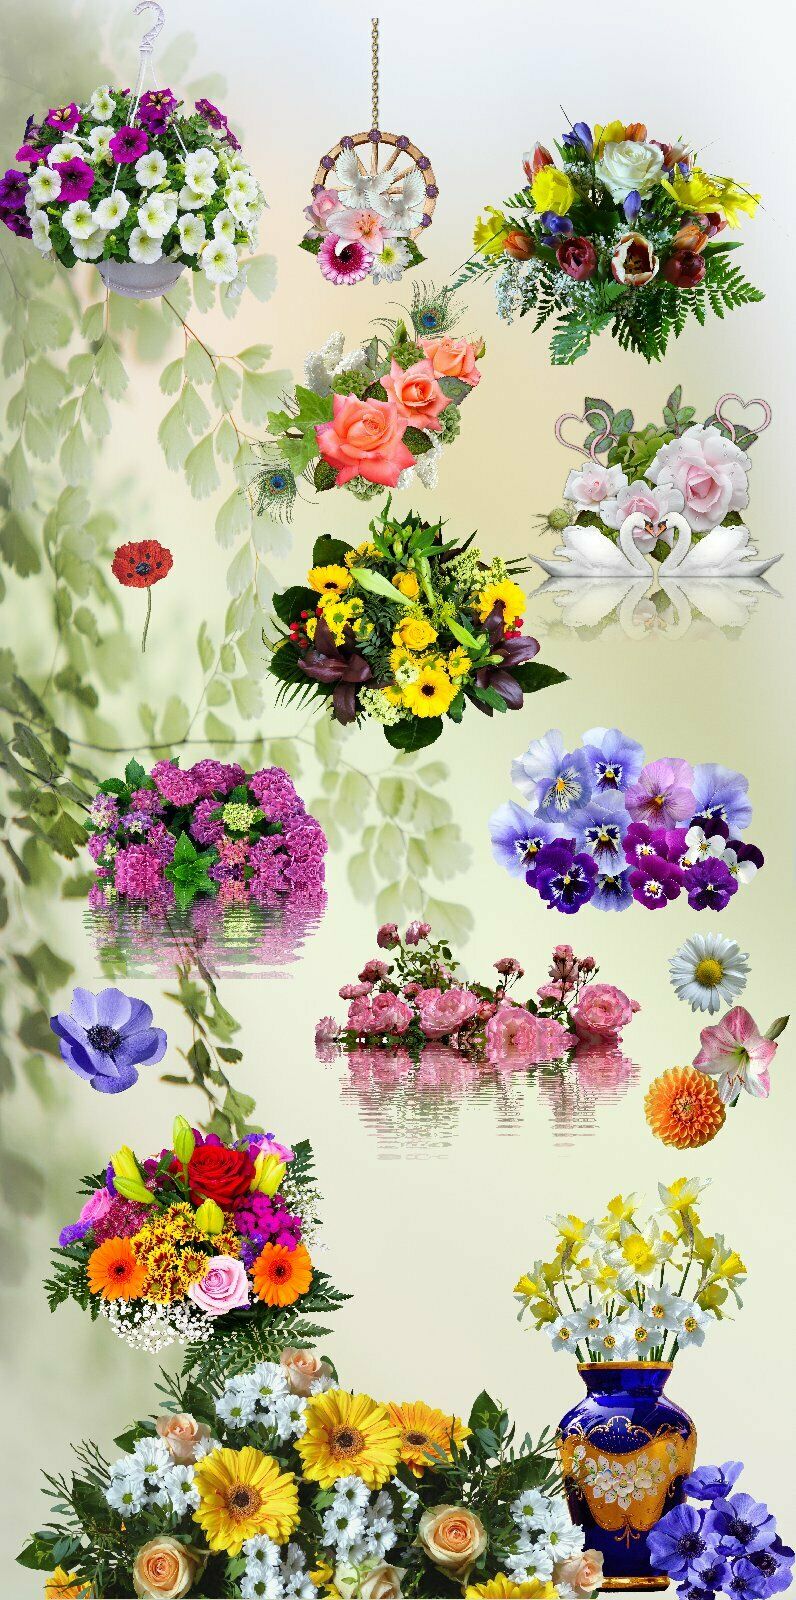 Türtapete Blumen Türposter 100x200cm 100x200cm selbstklebend Frühling Garten Straus Bunt 1074tp